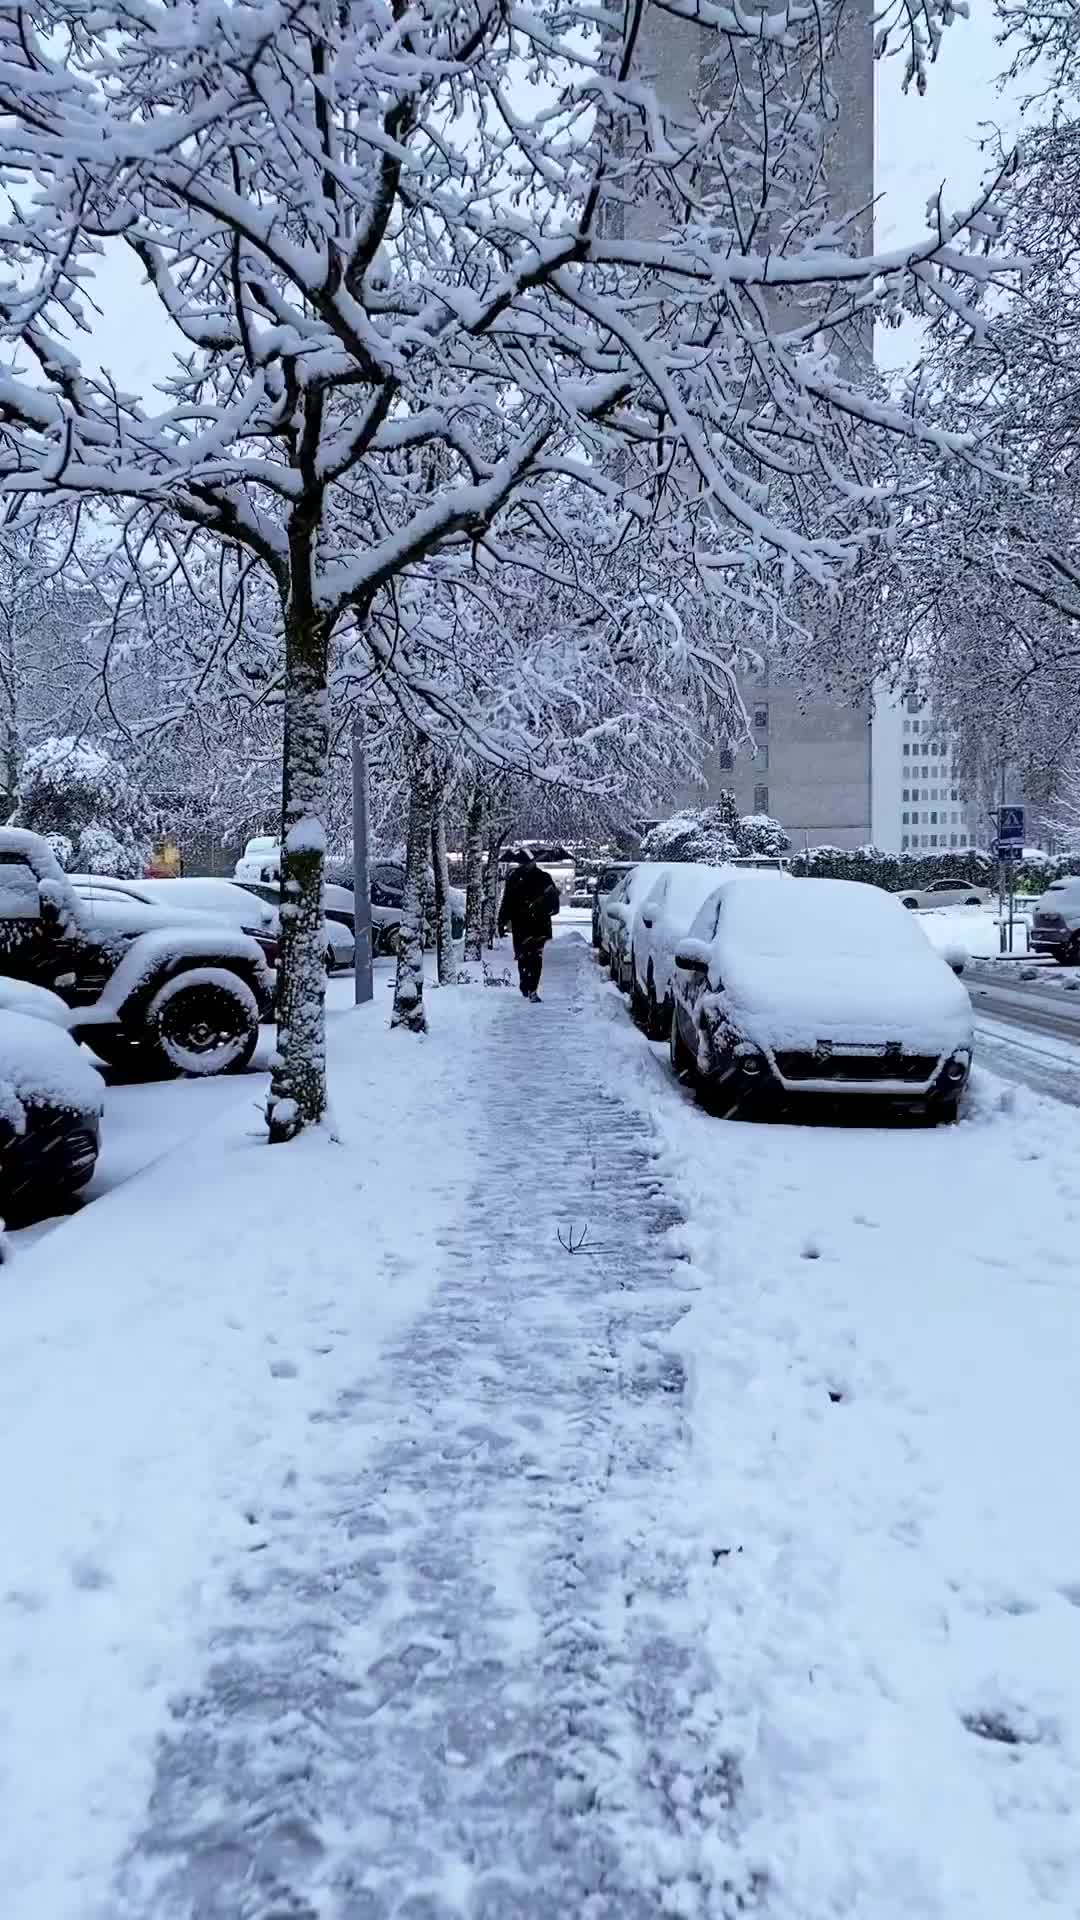 Second Snowfall in Geneva Captivates the City